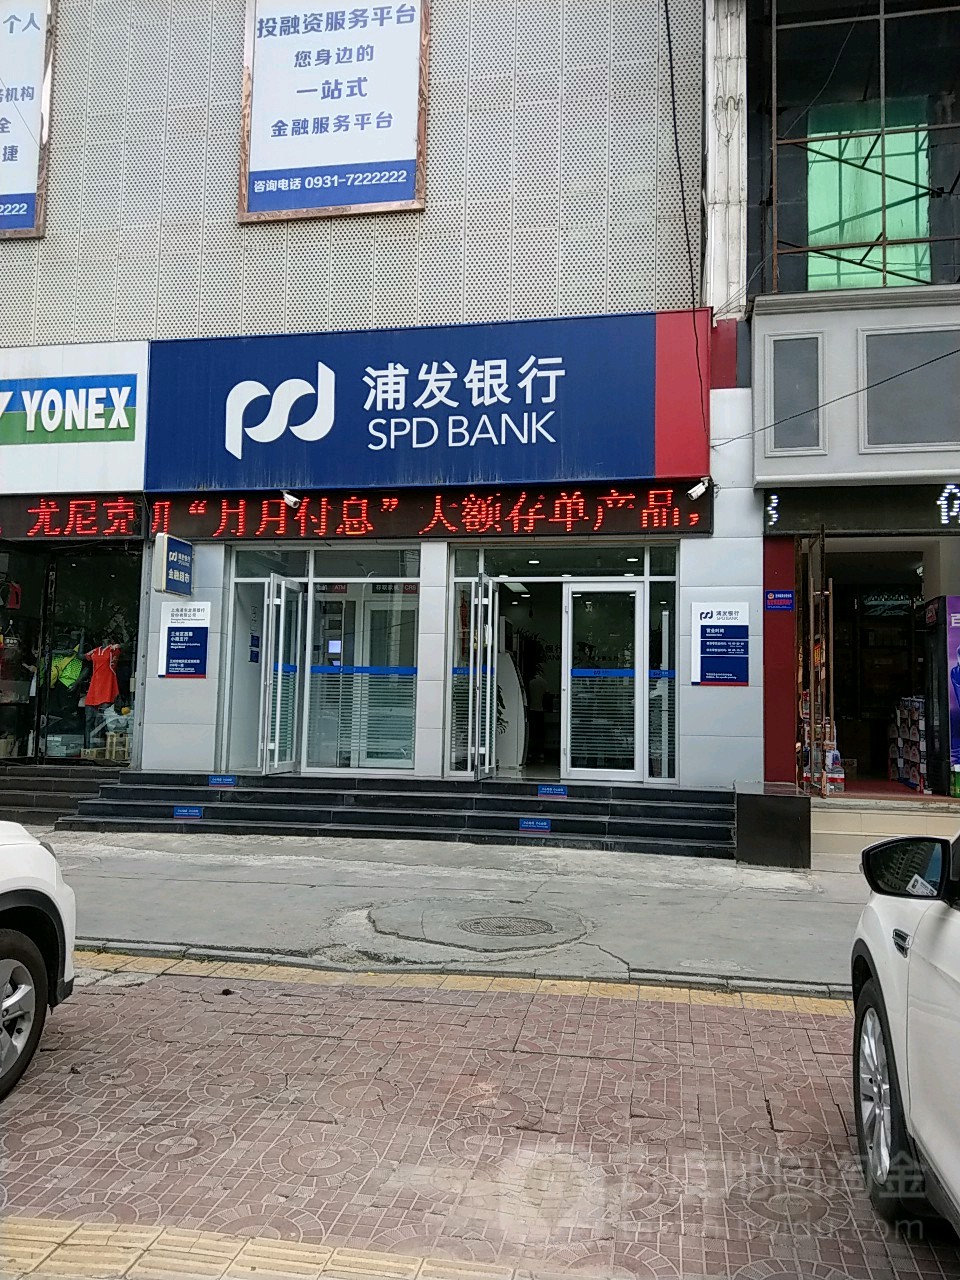 上海浦東發展銀行(蘭州定西路小微支行)